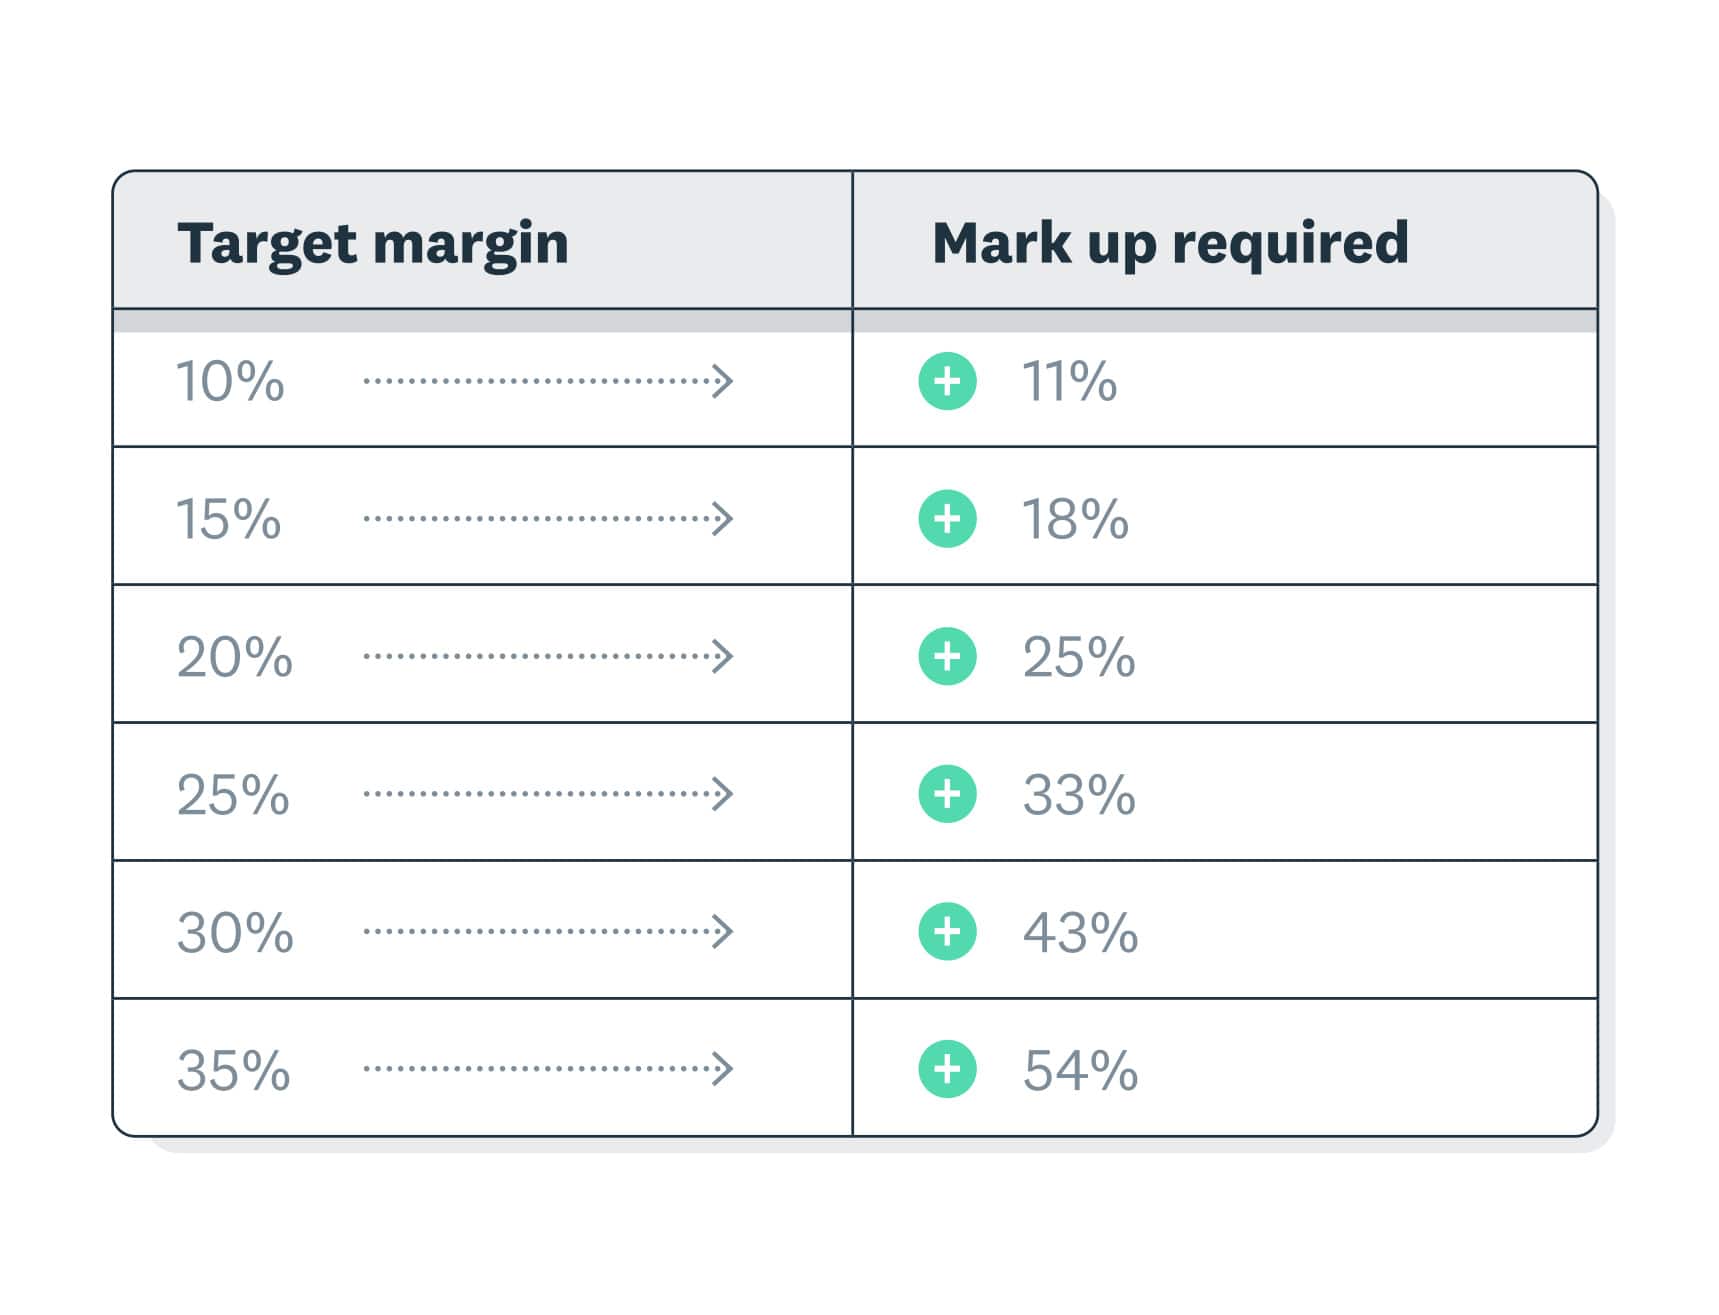 10% margin requires 11% markup. 20% margin requires 25% markup. 30% margin requires 43% markup, and 35% margin requires 54%.